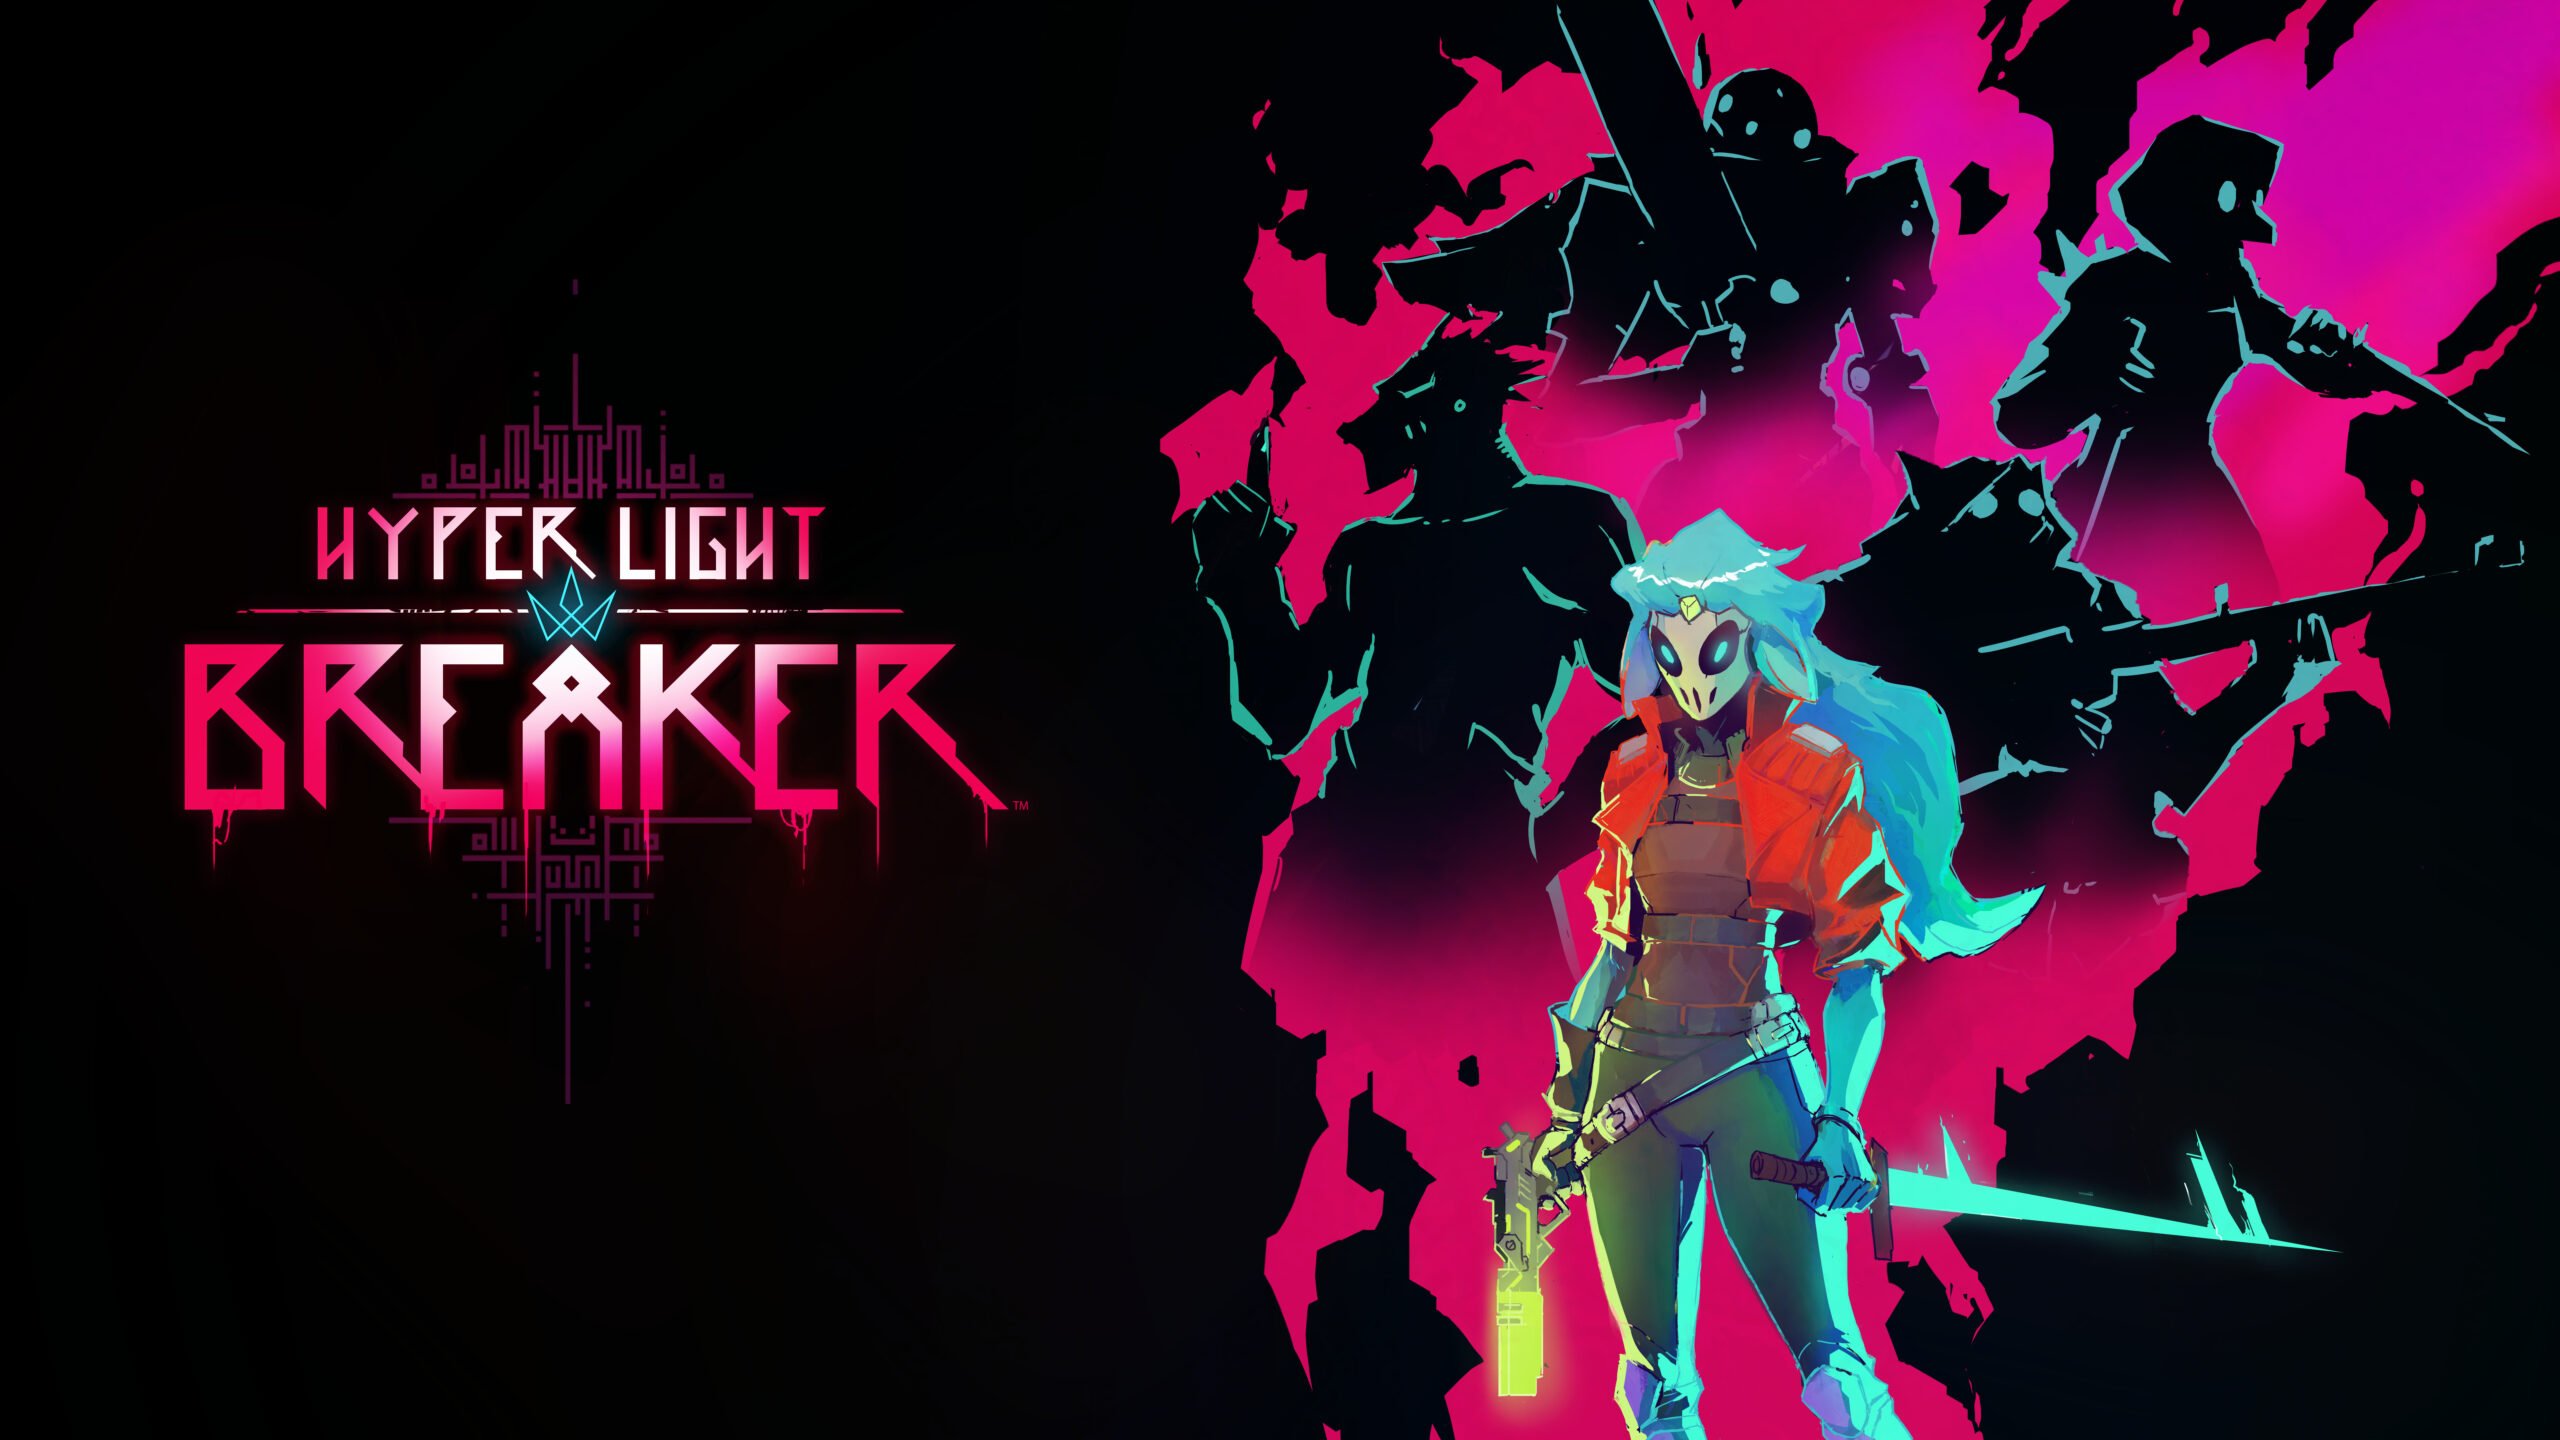 Hyper Light Drifter sequel, Hyper Breaker | VGC